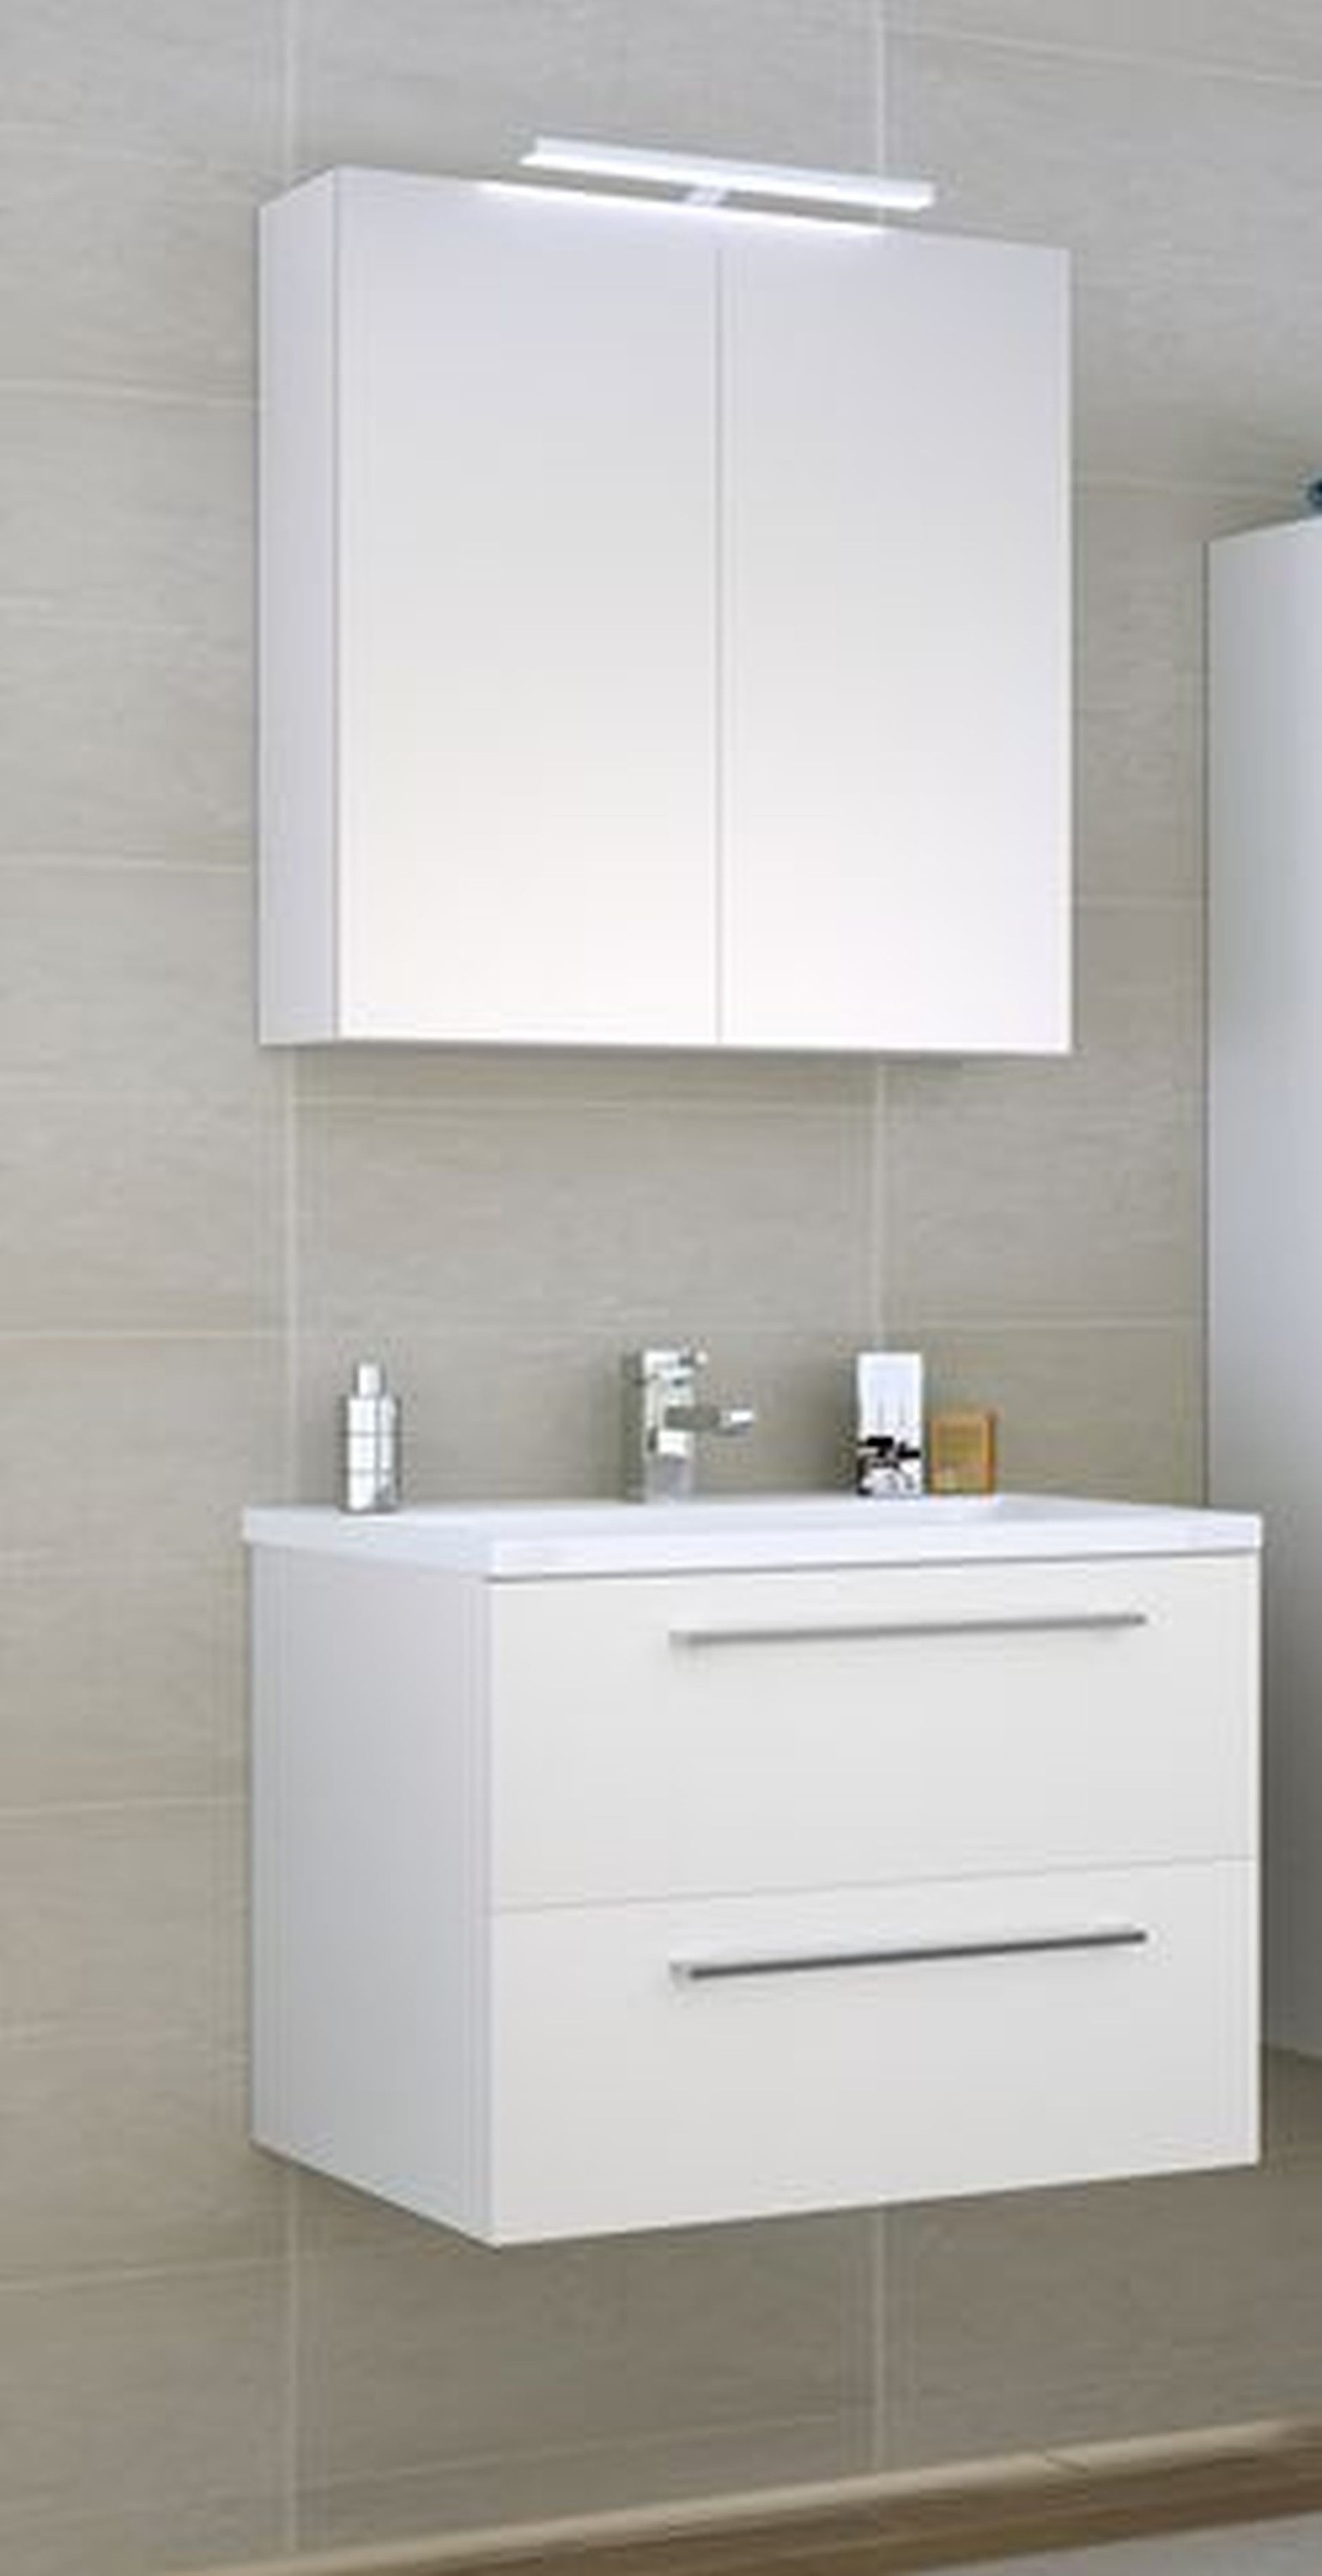 Badezimmer Set
 Badezimmer Set Scandic 60cm weiß glänzend Badezimmer